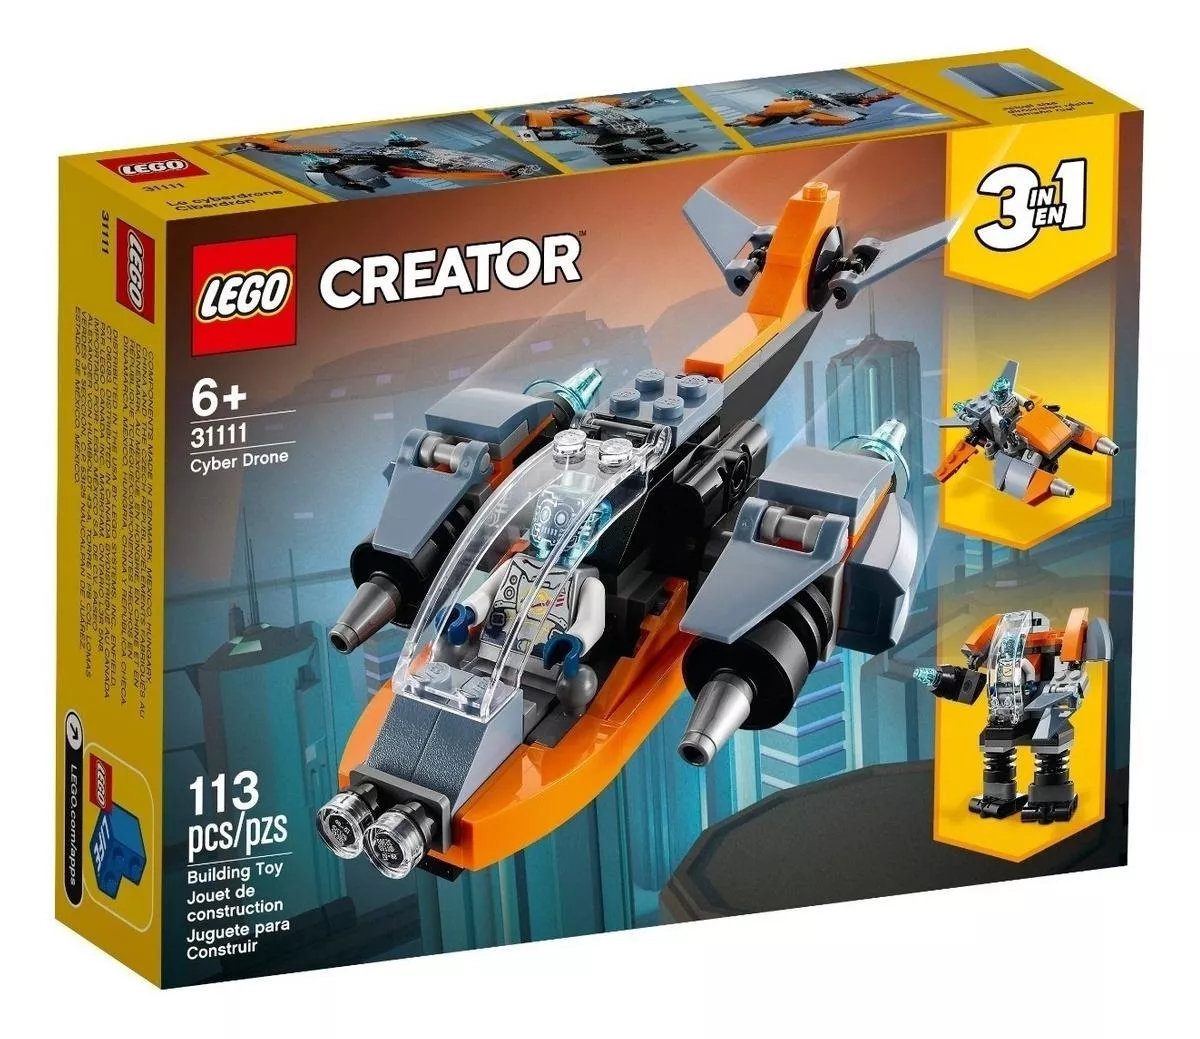 Blocos De Montar Legocreator 3-in-1 Cyber Drone 113 Peças Em Caixa